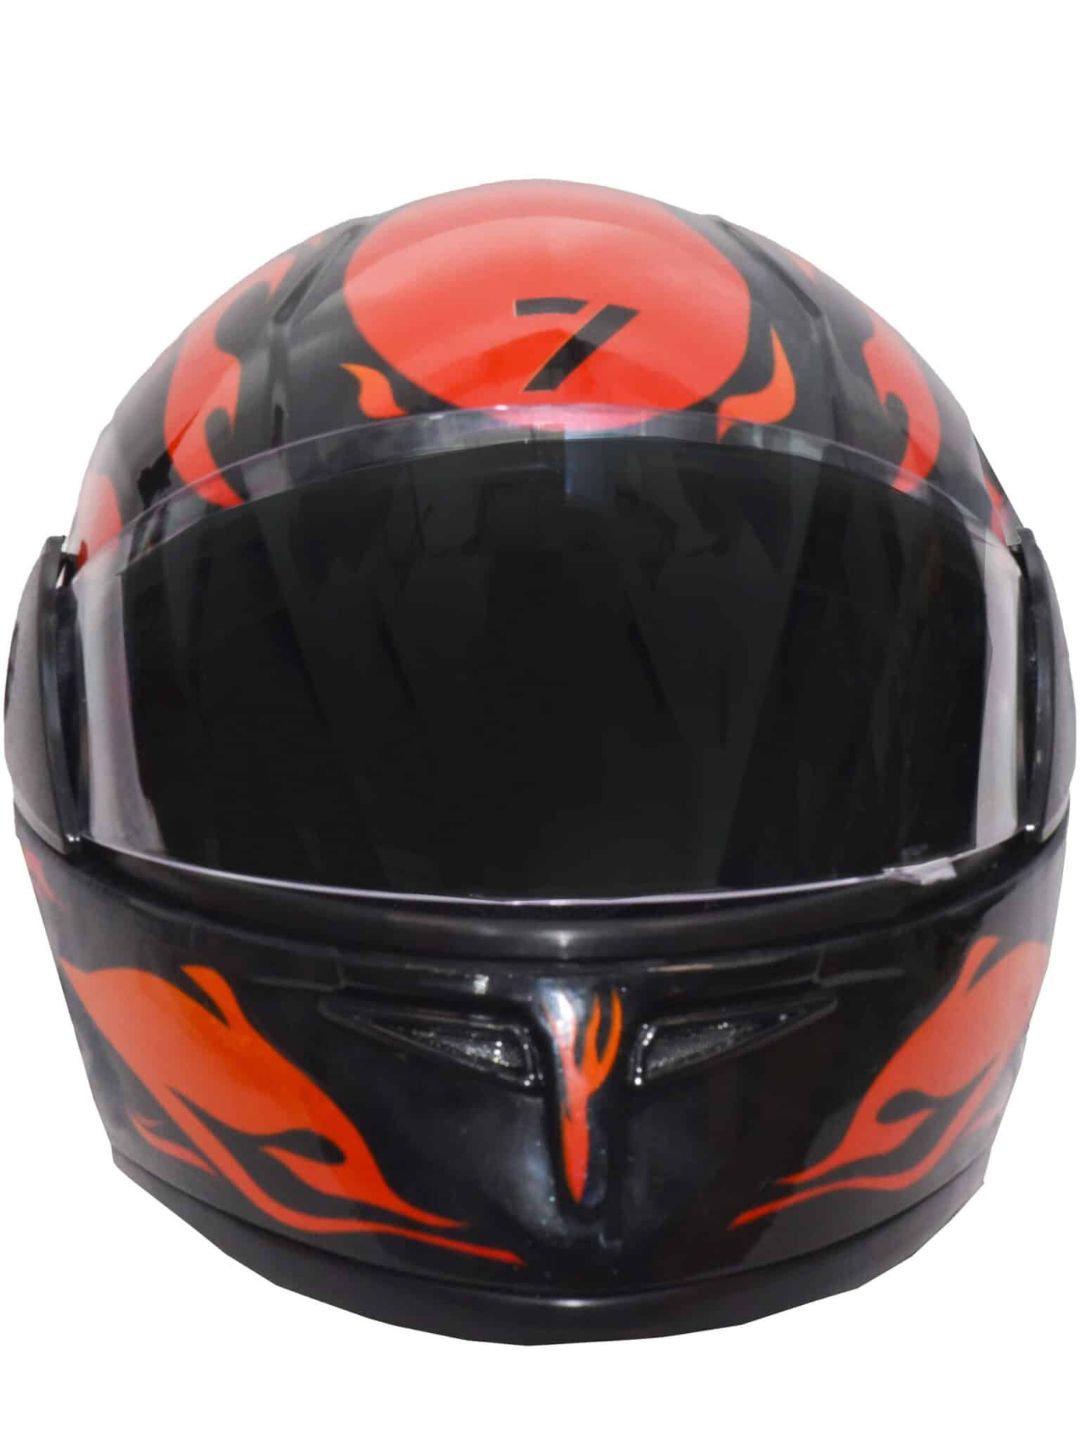 7 Mile Stone Full Face Helmet for Men (Red / Black)